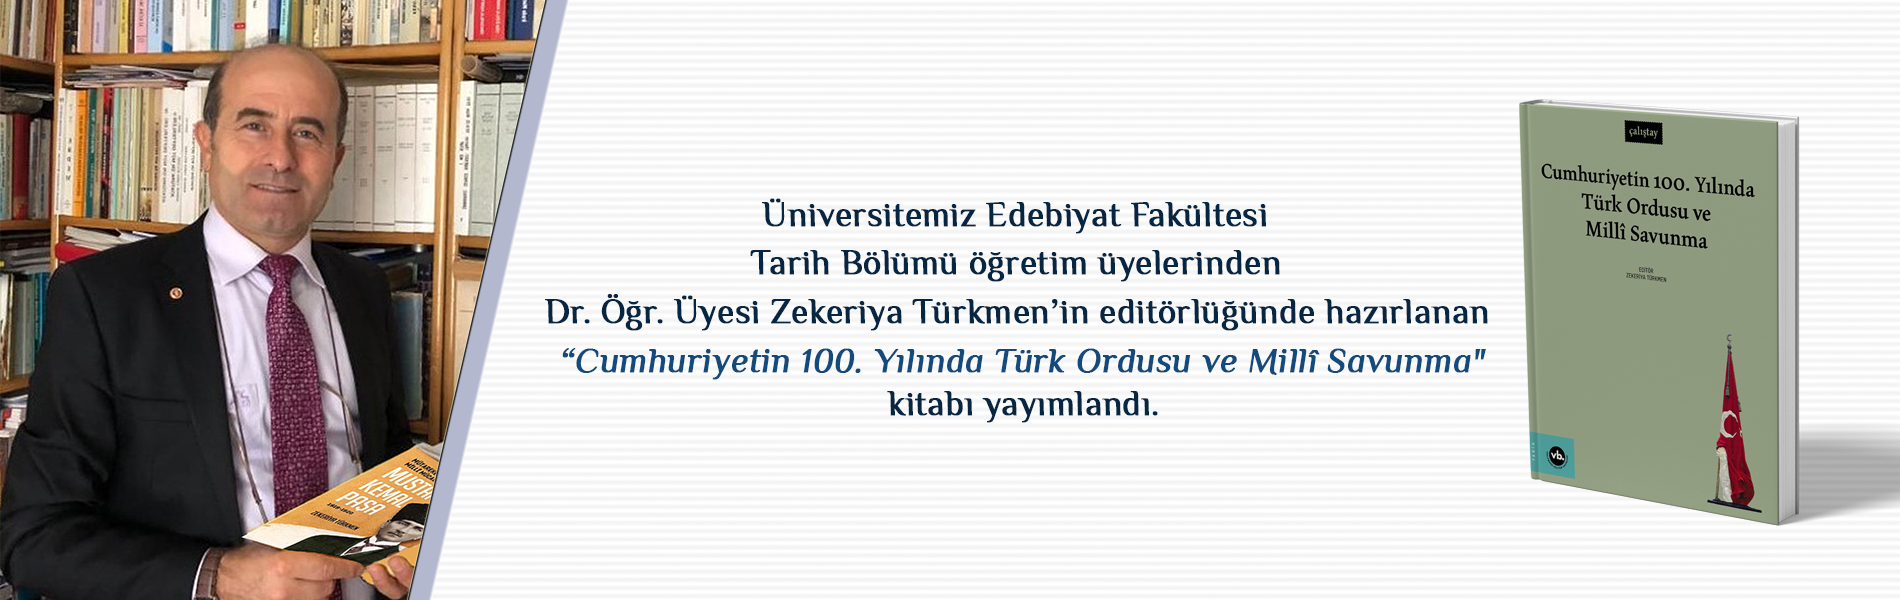 Dr. Öğr. Üyesi Zekeriya Türkmen’in Editörlüğünde Hazırlanan “Cumhuriyetin 100. Yılında Türk Ordusu ve Millî Savunma” Kitabı Yayımlandı